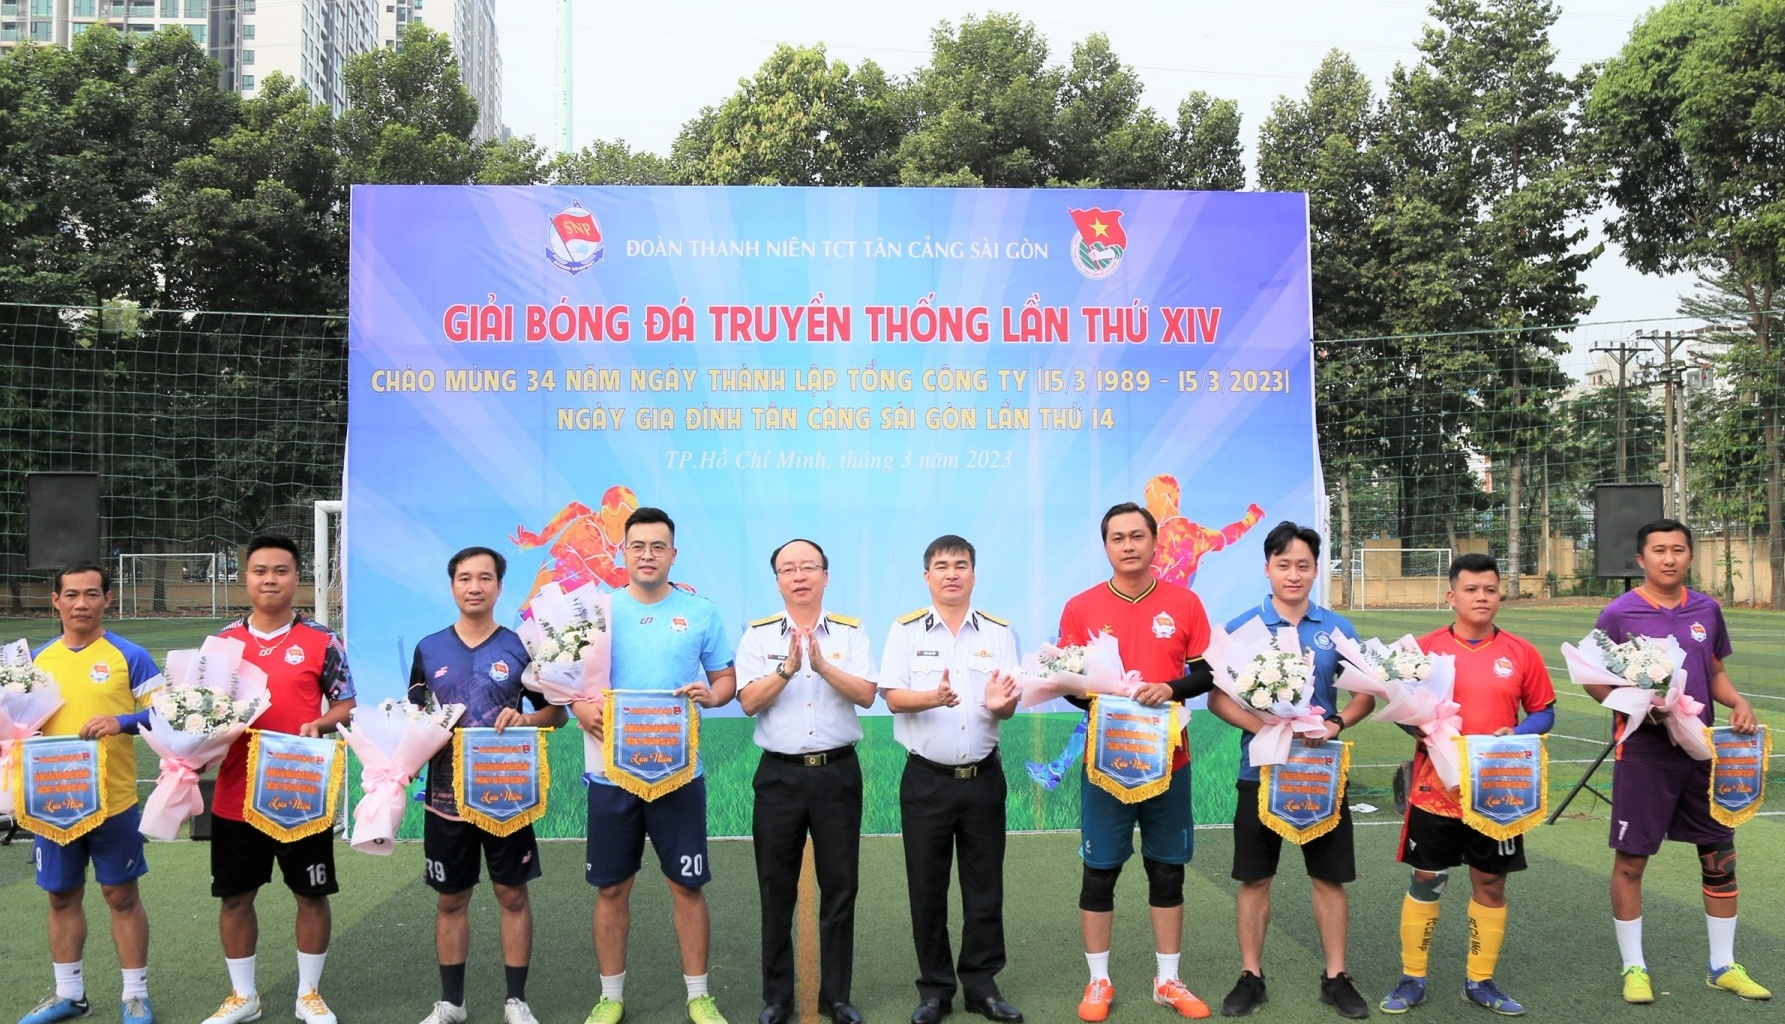 Đoàn TN Tổng Công ty Tân Cảng Sài Gòn: Tổ chức giải bóng đá truyền thống năm 2023